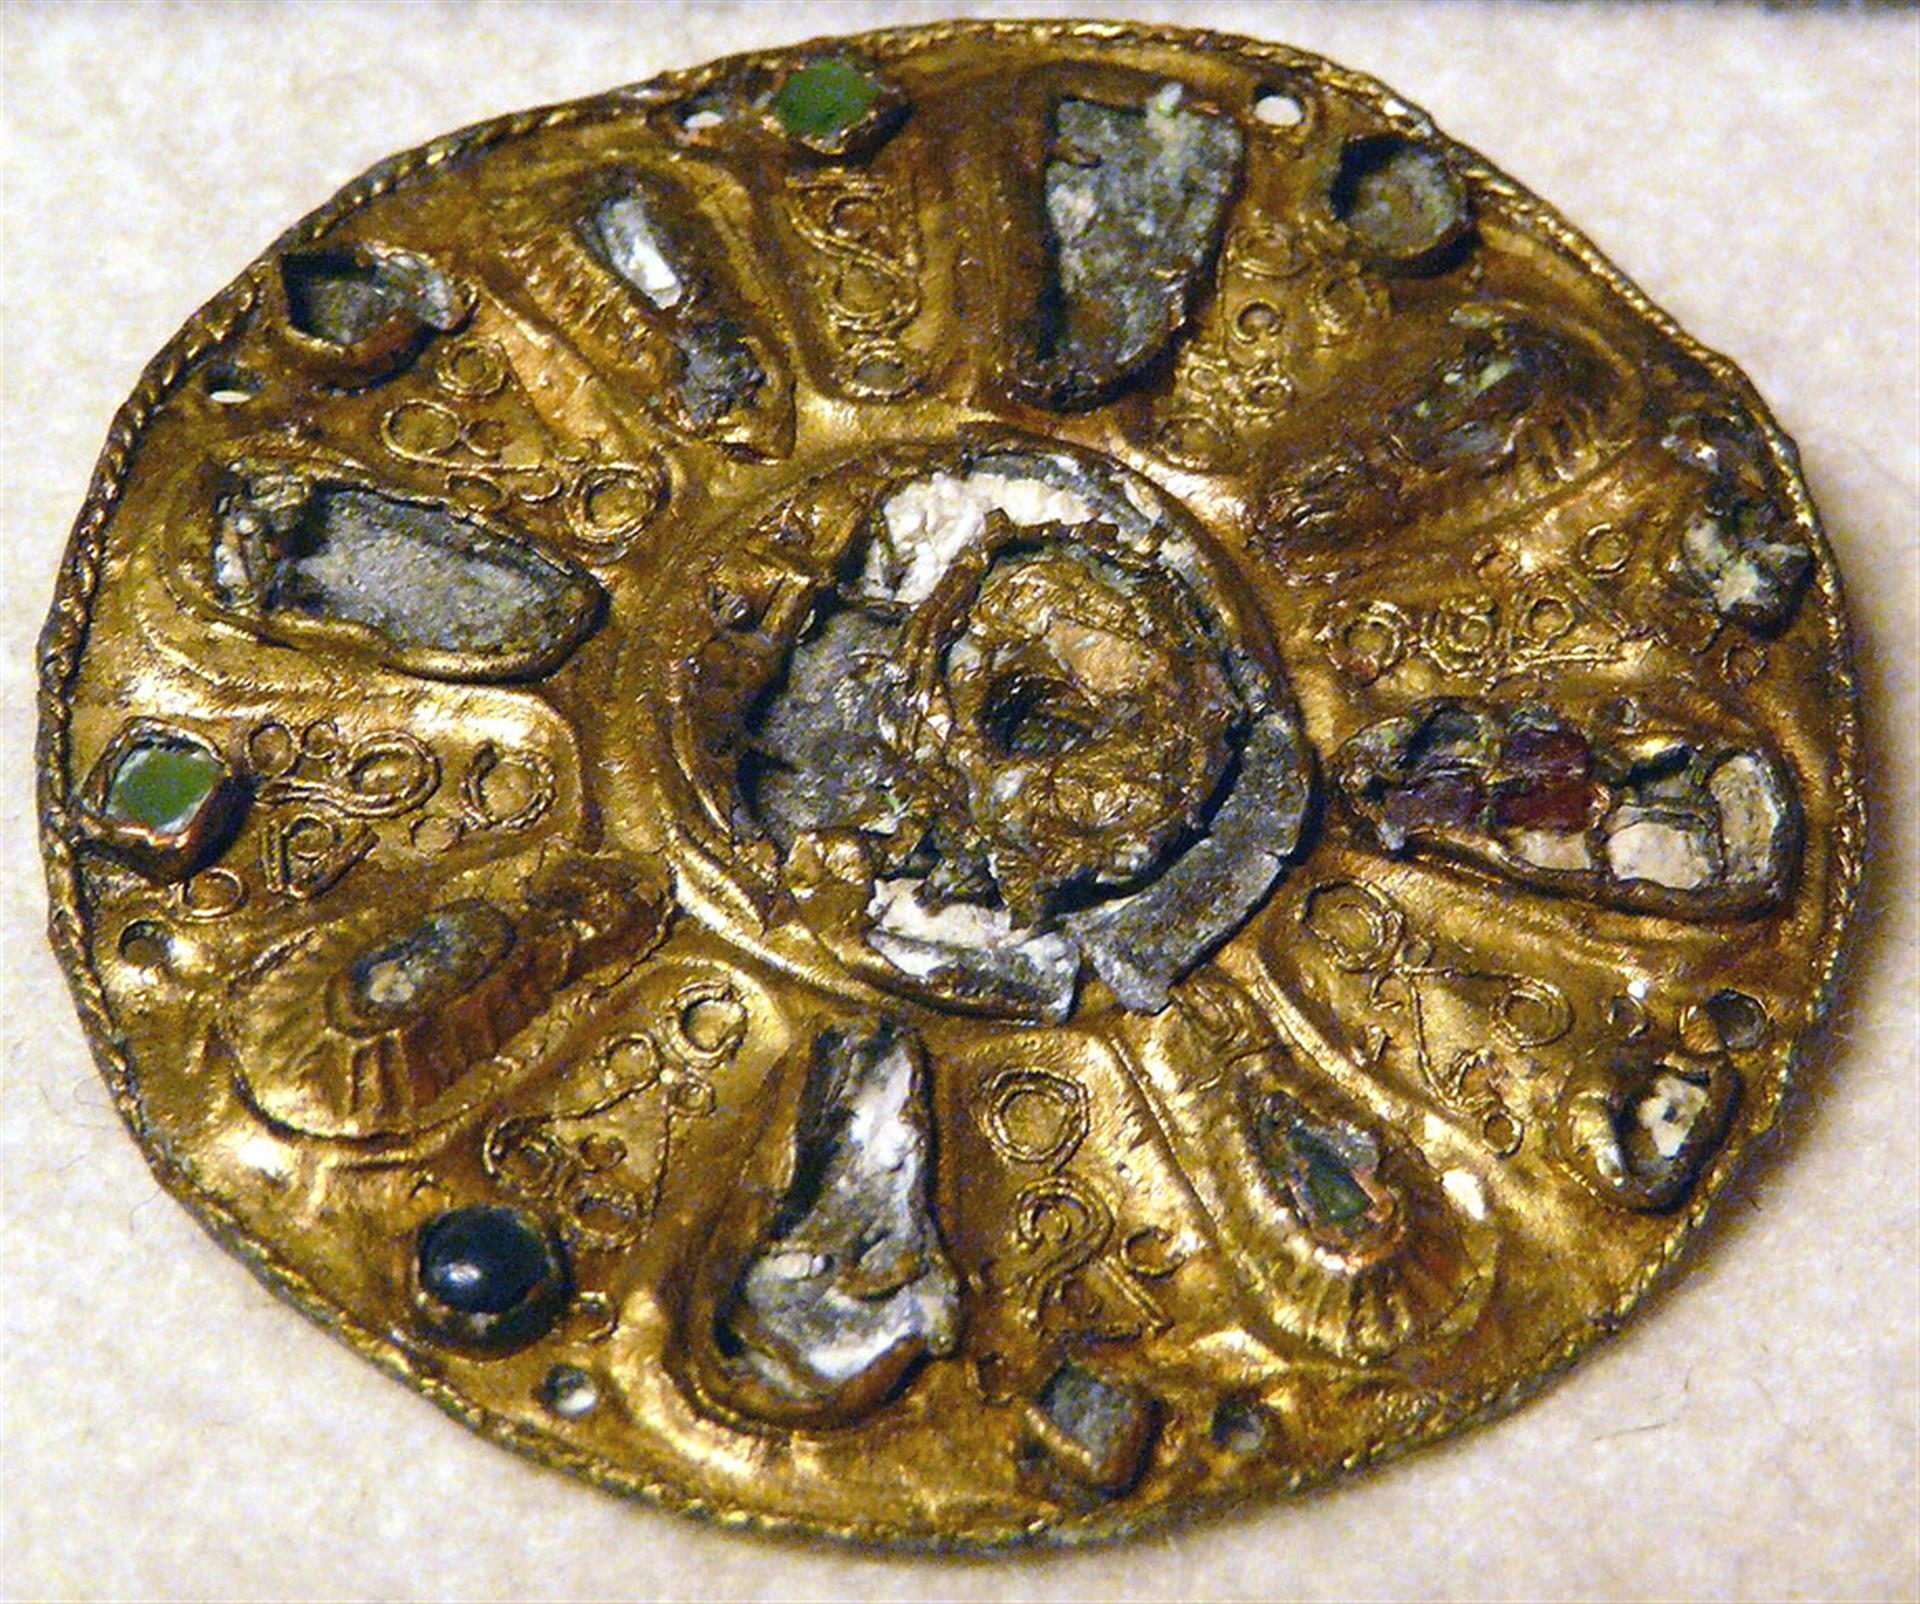 Fundstück einer Scheibenfibel (7. Jhd.) aus Neuss-Grimlinghausen. Sie ist ausgestellt im Clemens-Sels-Museum. &copy; Hartmann Linge / CC-BY-SA 3.0 (via Wikimedia Commons)